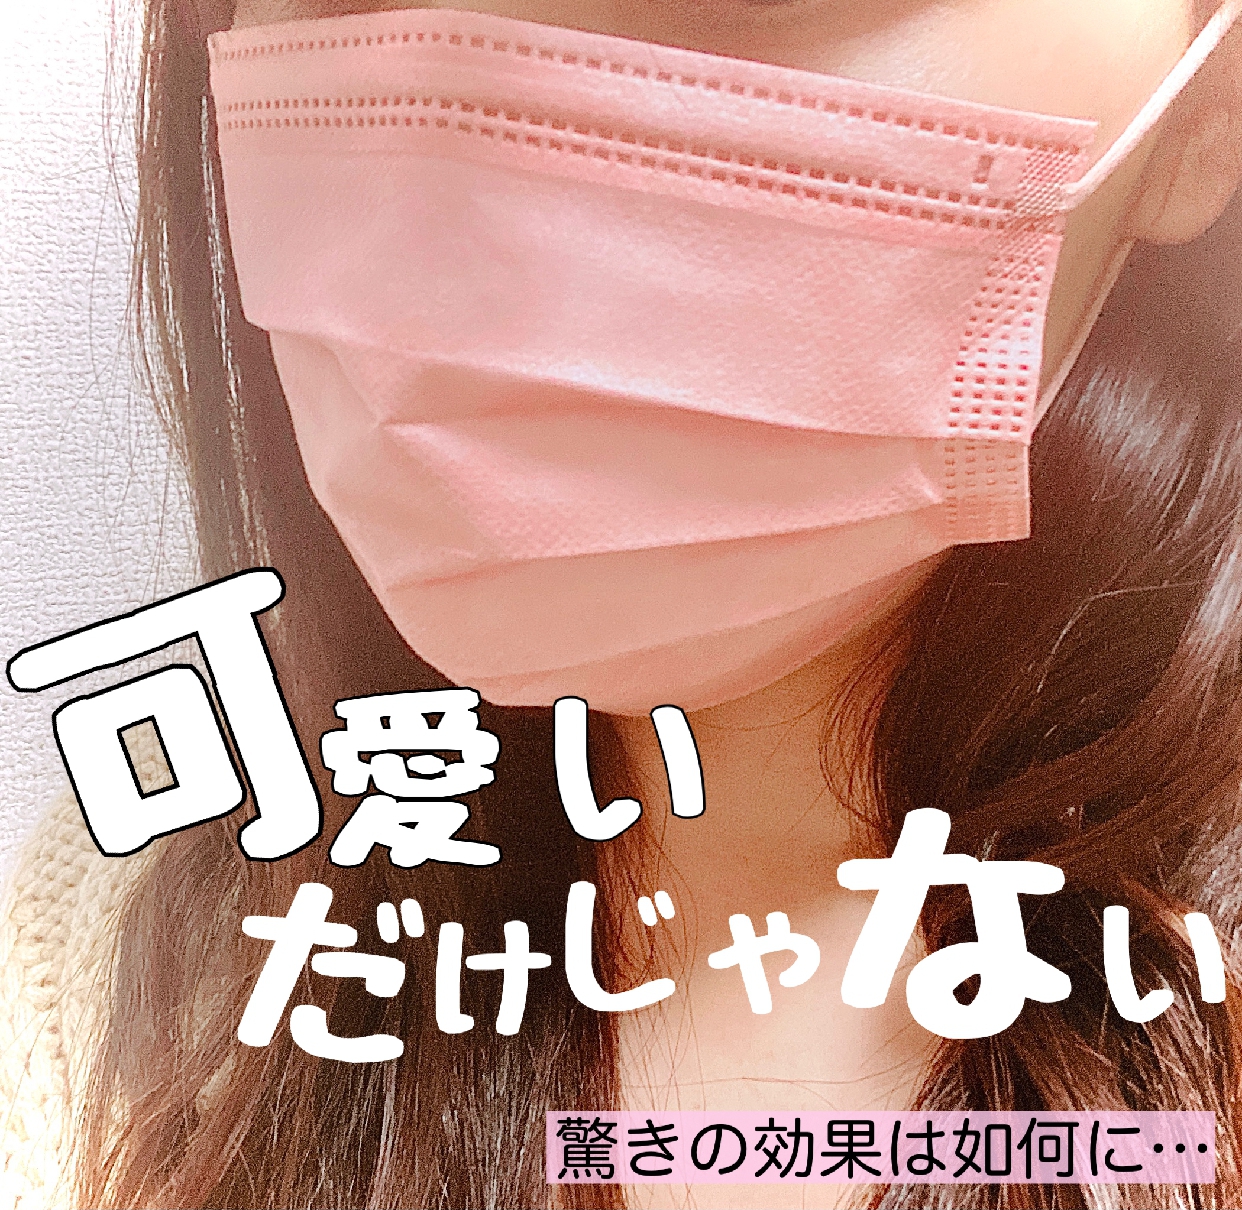 WEIMALL(ウェイモール) 血色マスクを使ったChihiroさんのクチコミ画像2